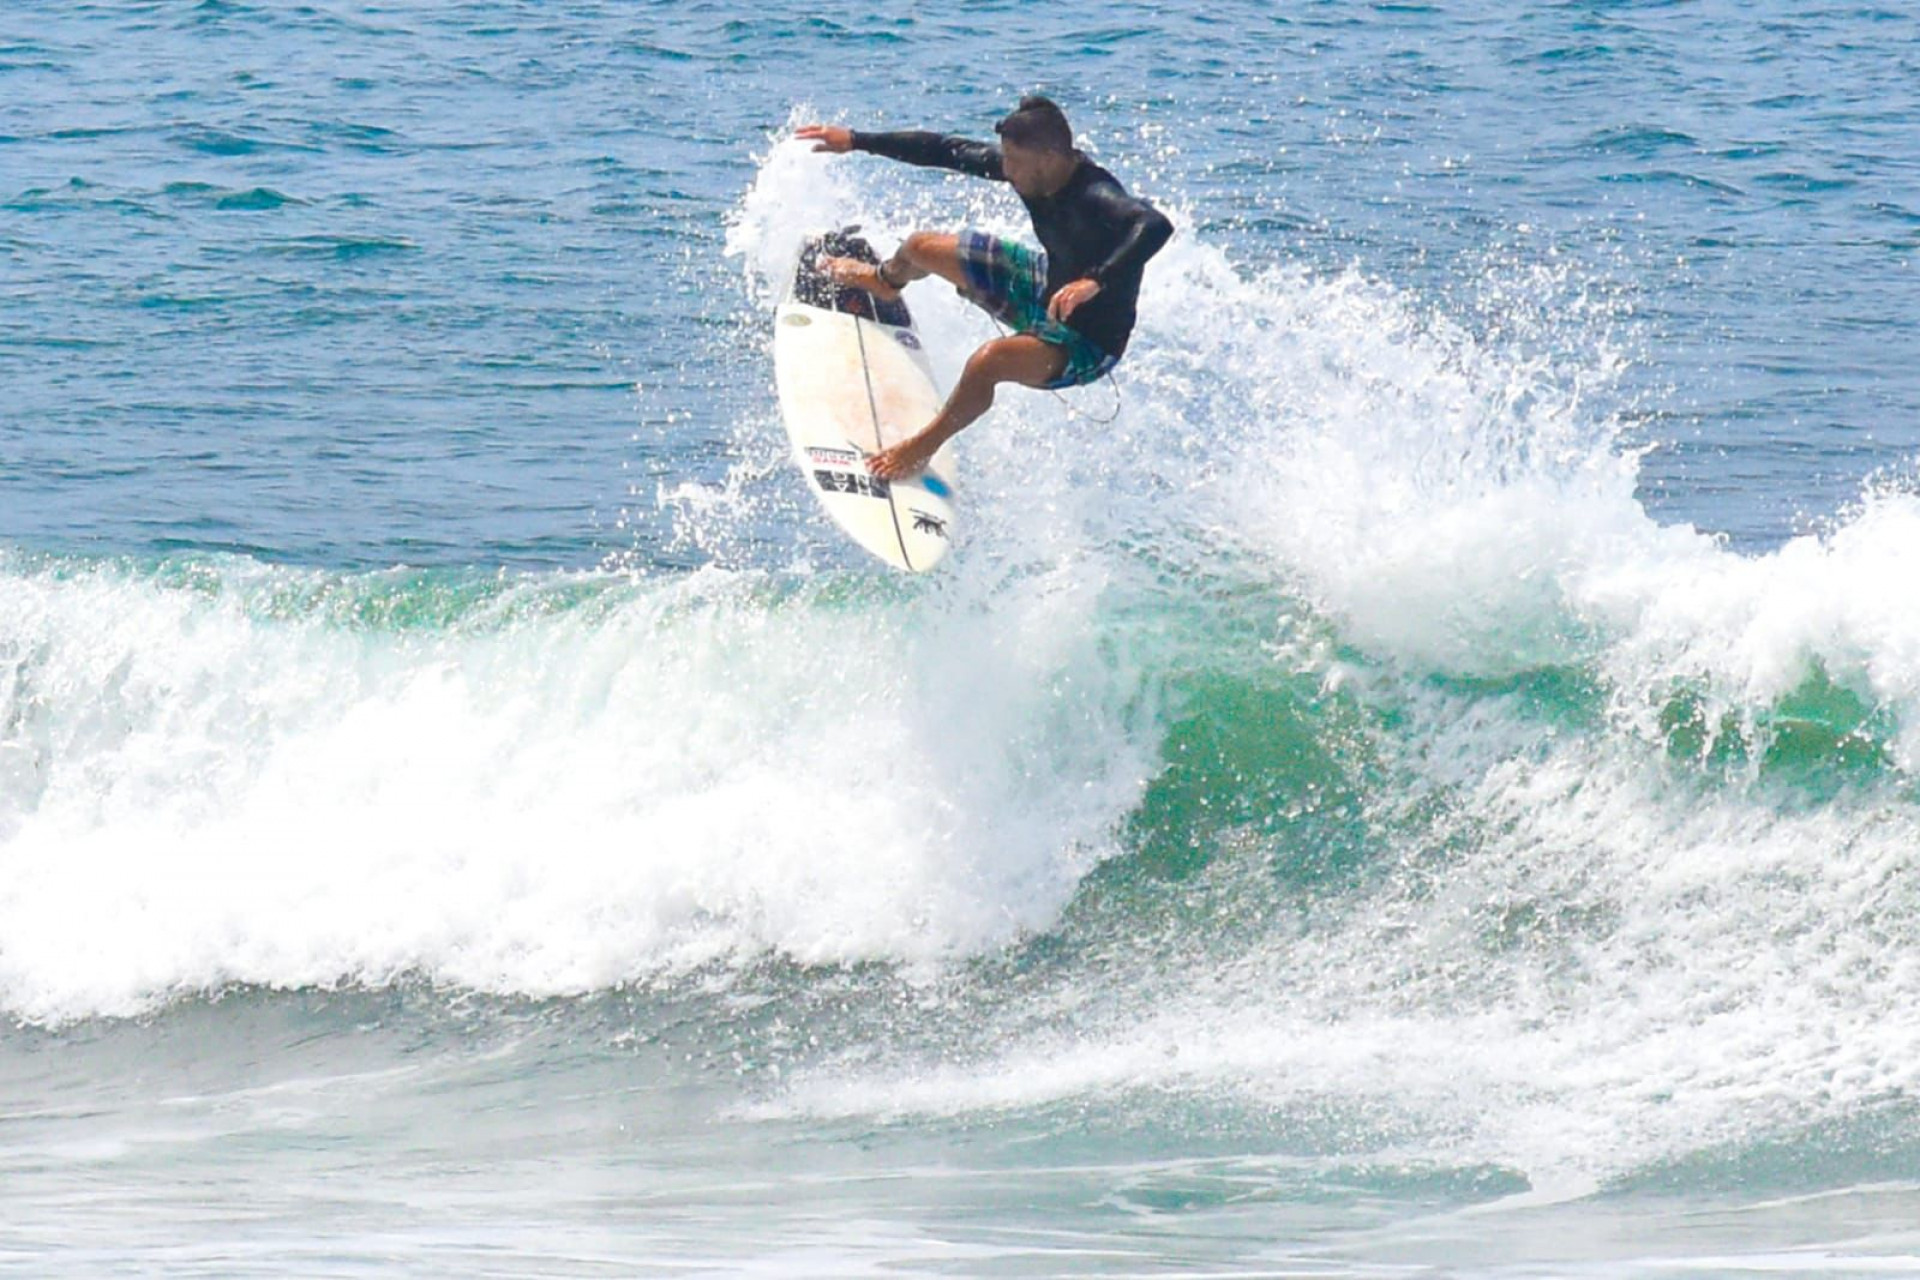 Cerca de 70 surfistas devem participar do campeonato - Divulgação/Evento